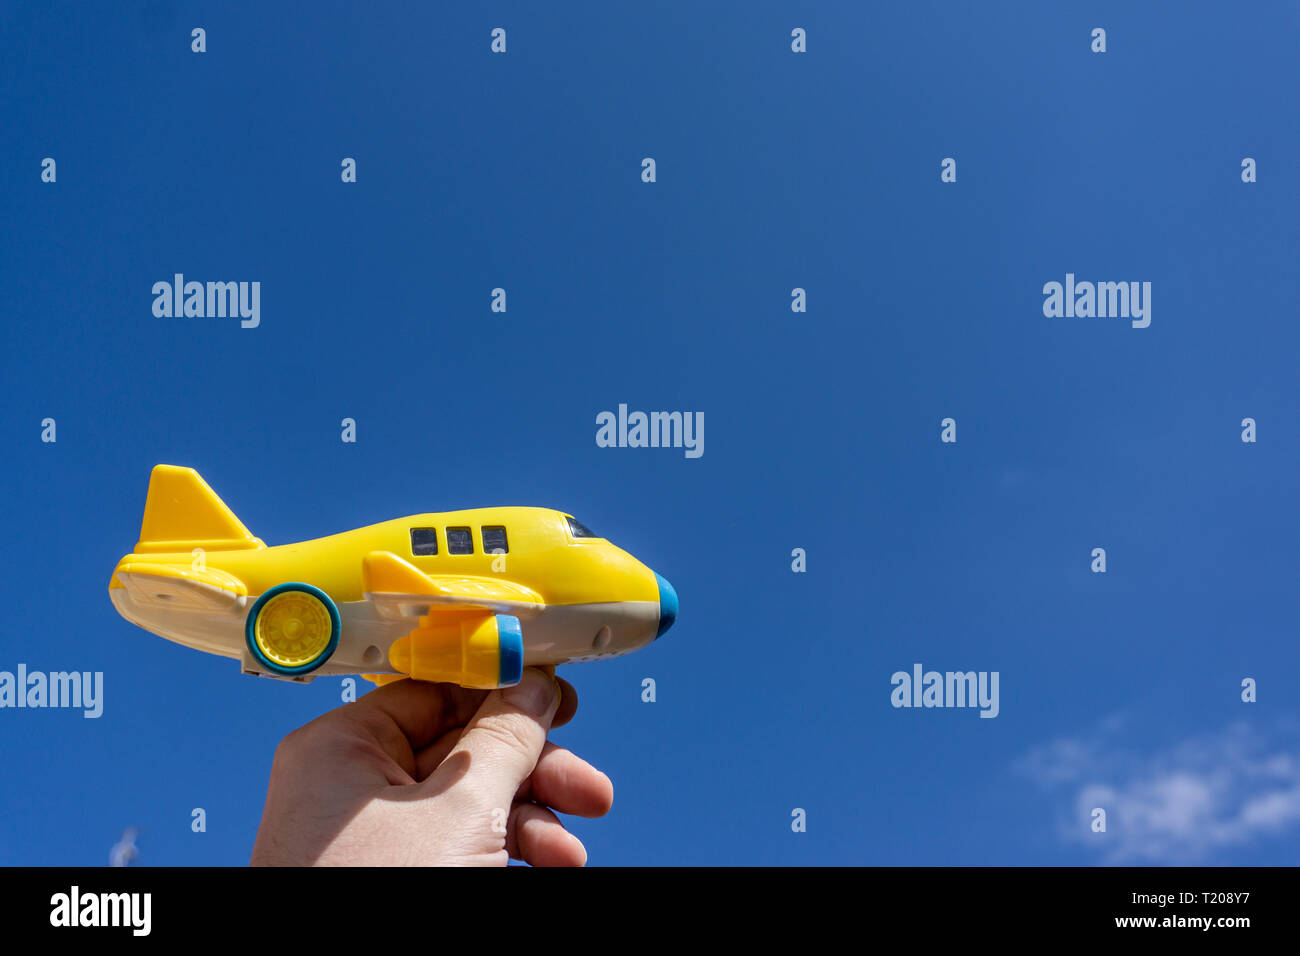 Gelb Spielzeug Flugzeug in der schönen blauen Himmel, negativen Raum, Konzept der gehen auf einen zauberhaften Urlaub, traumziel Fliegen Stockfoto